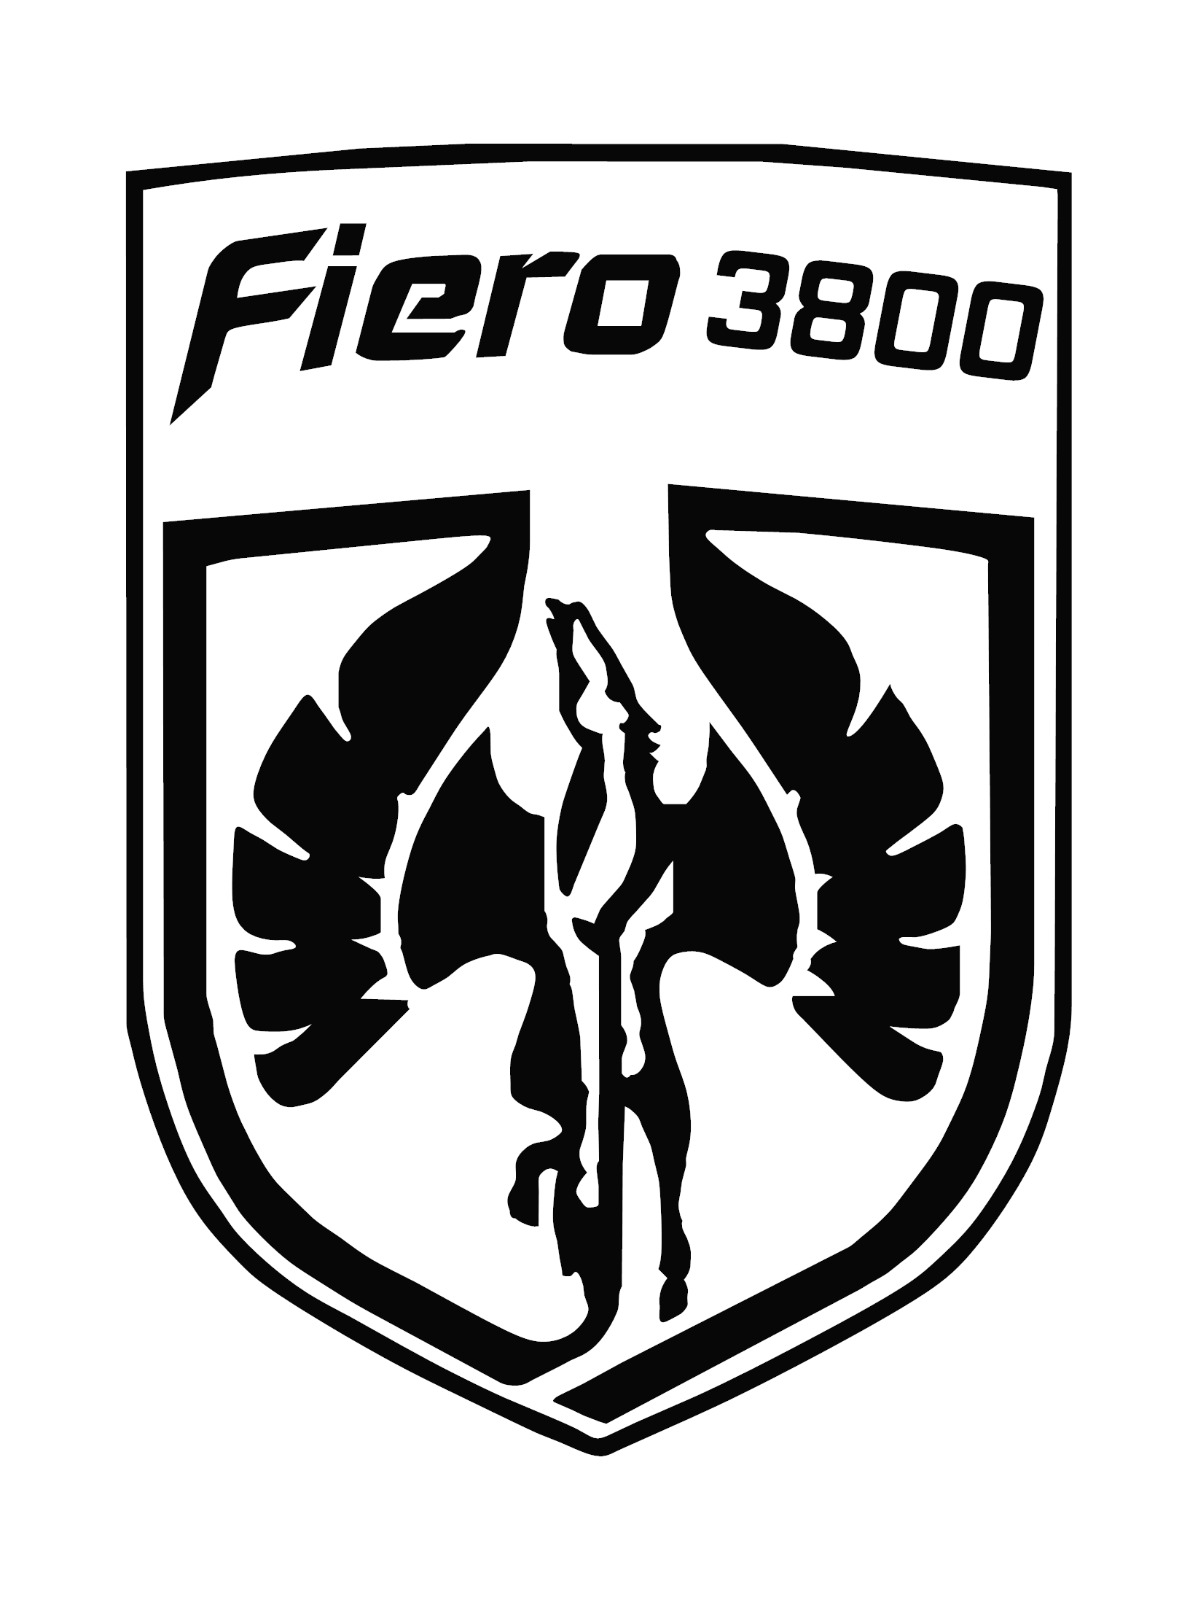 Pontiac Fiero Pegasus Emblem 3800 Vinyl Decal Your Color Choice Sticker